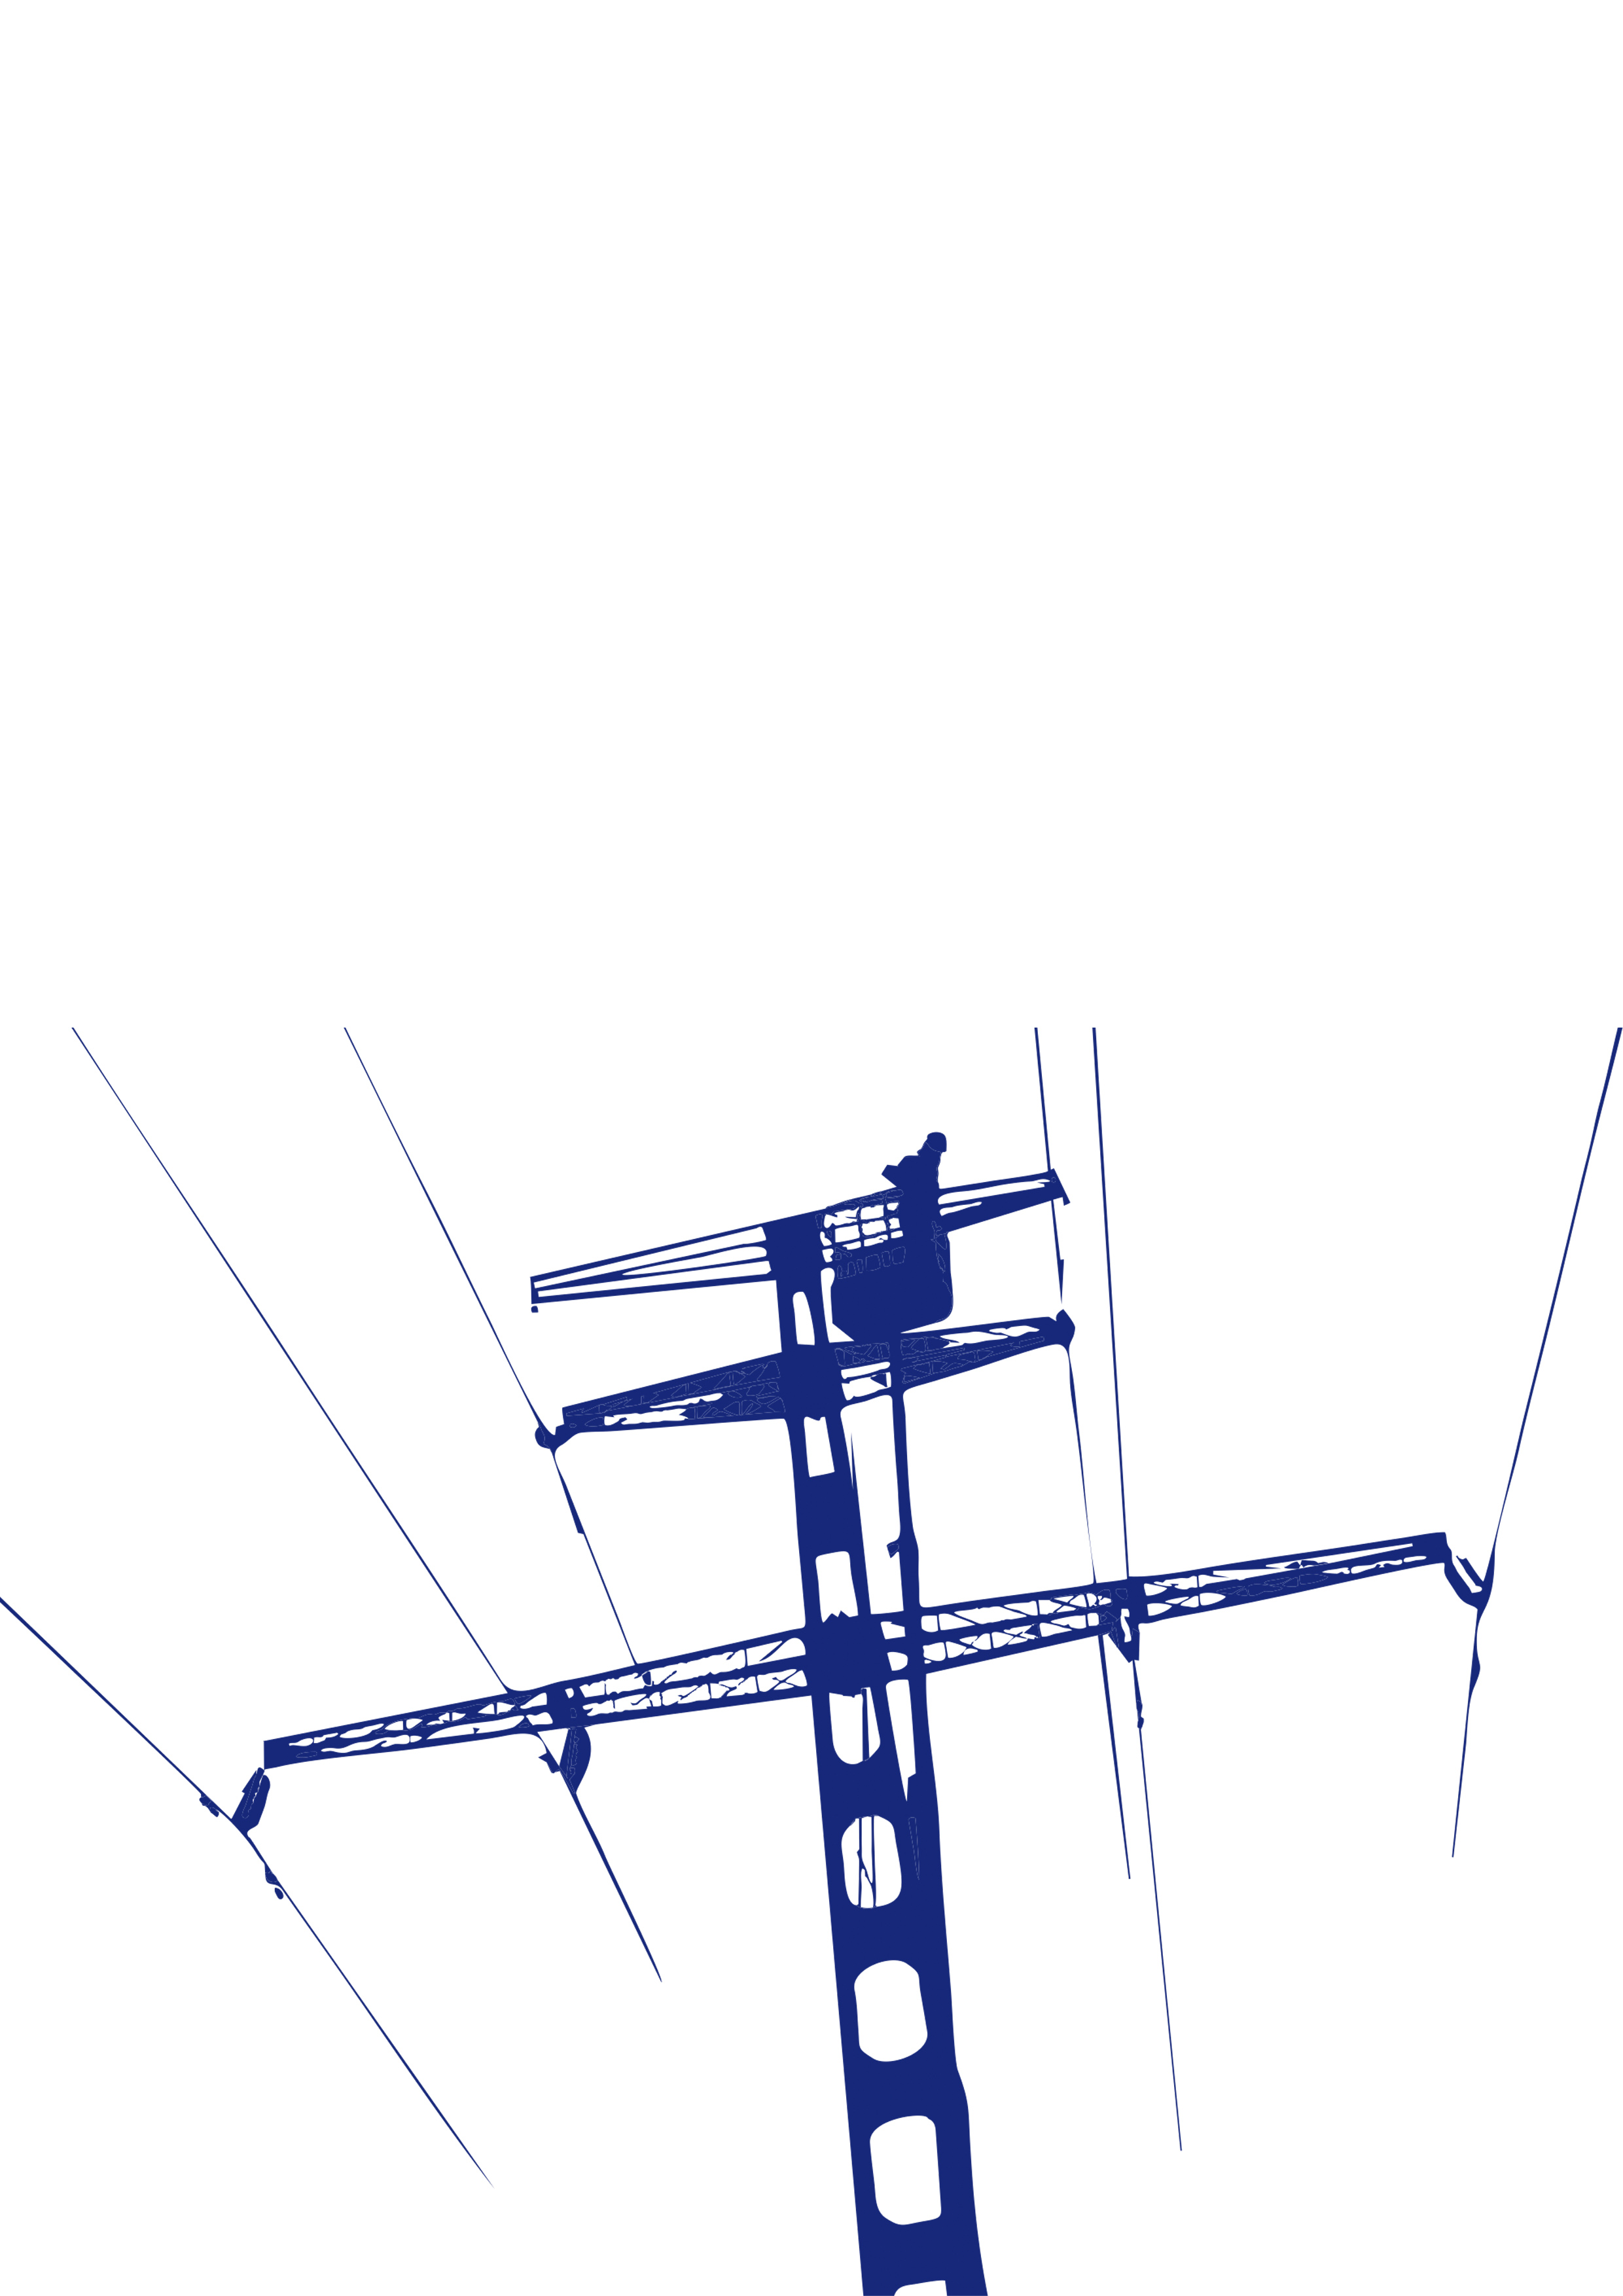 Linea de 110 kV